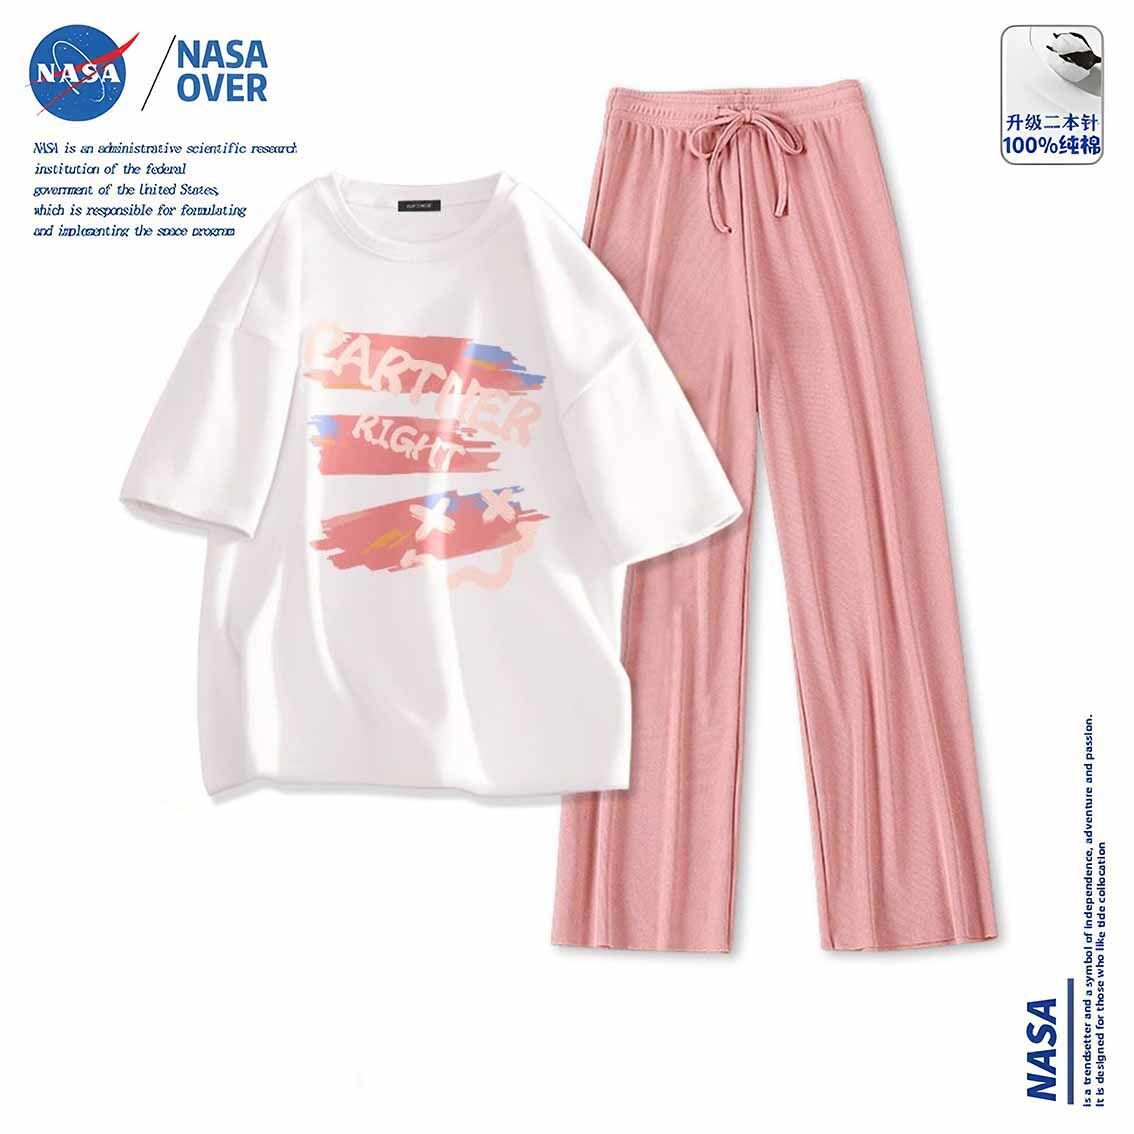 NASAOVER NASA联名休闲套装女纯棉短袖t恤冰丝阔腿长裤夏季超萌穿搭一整套 38.44元